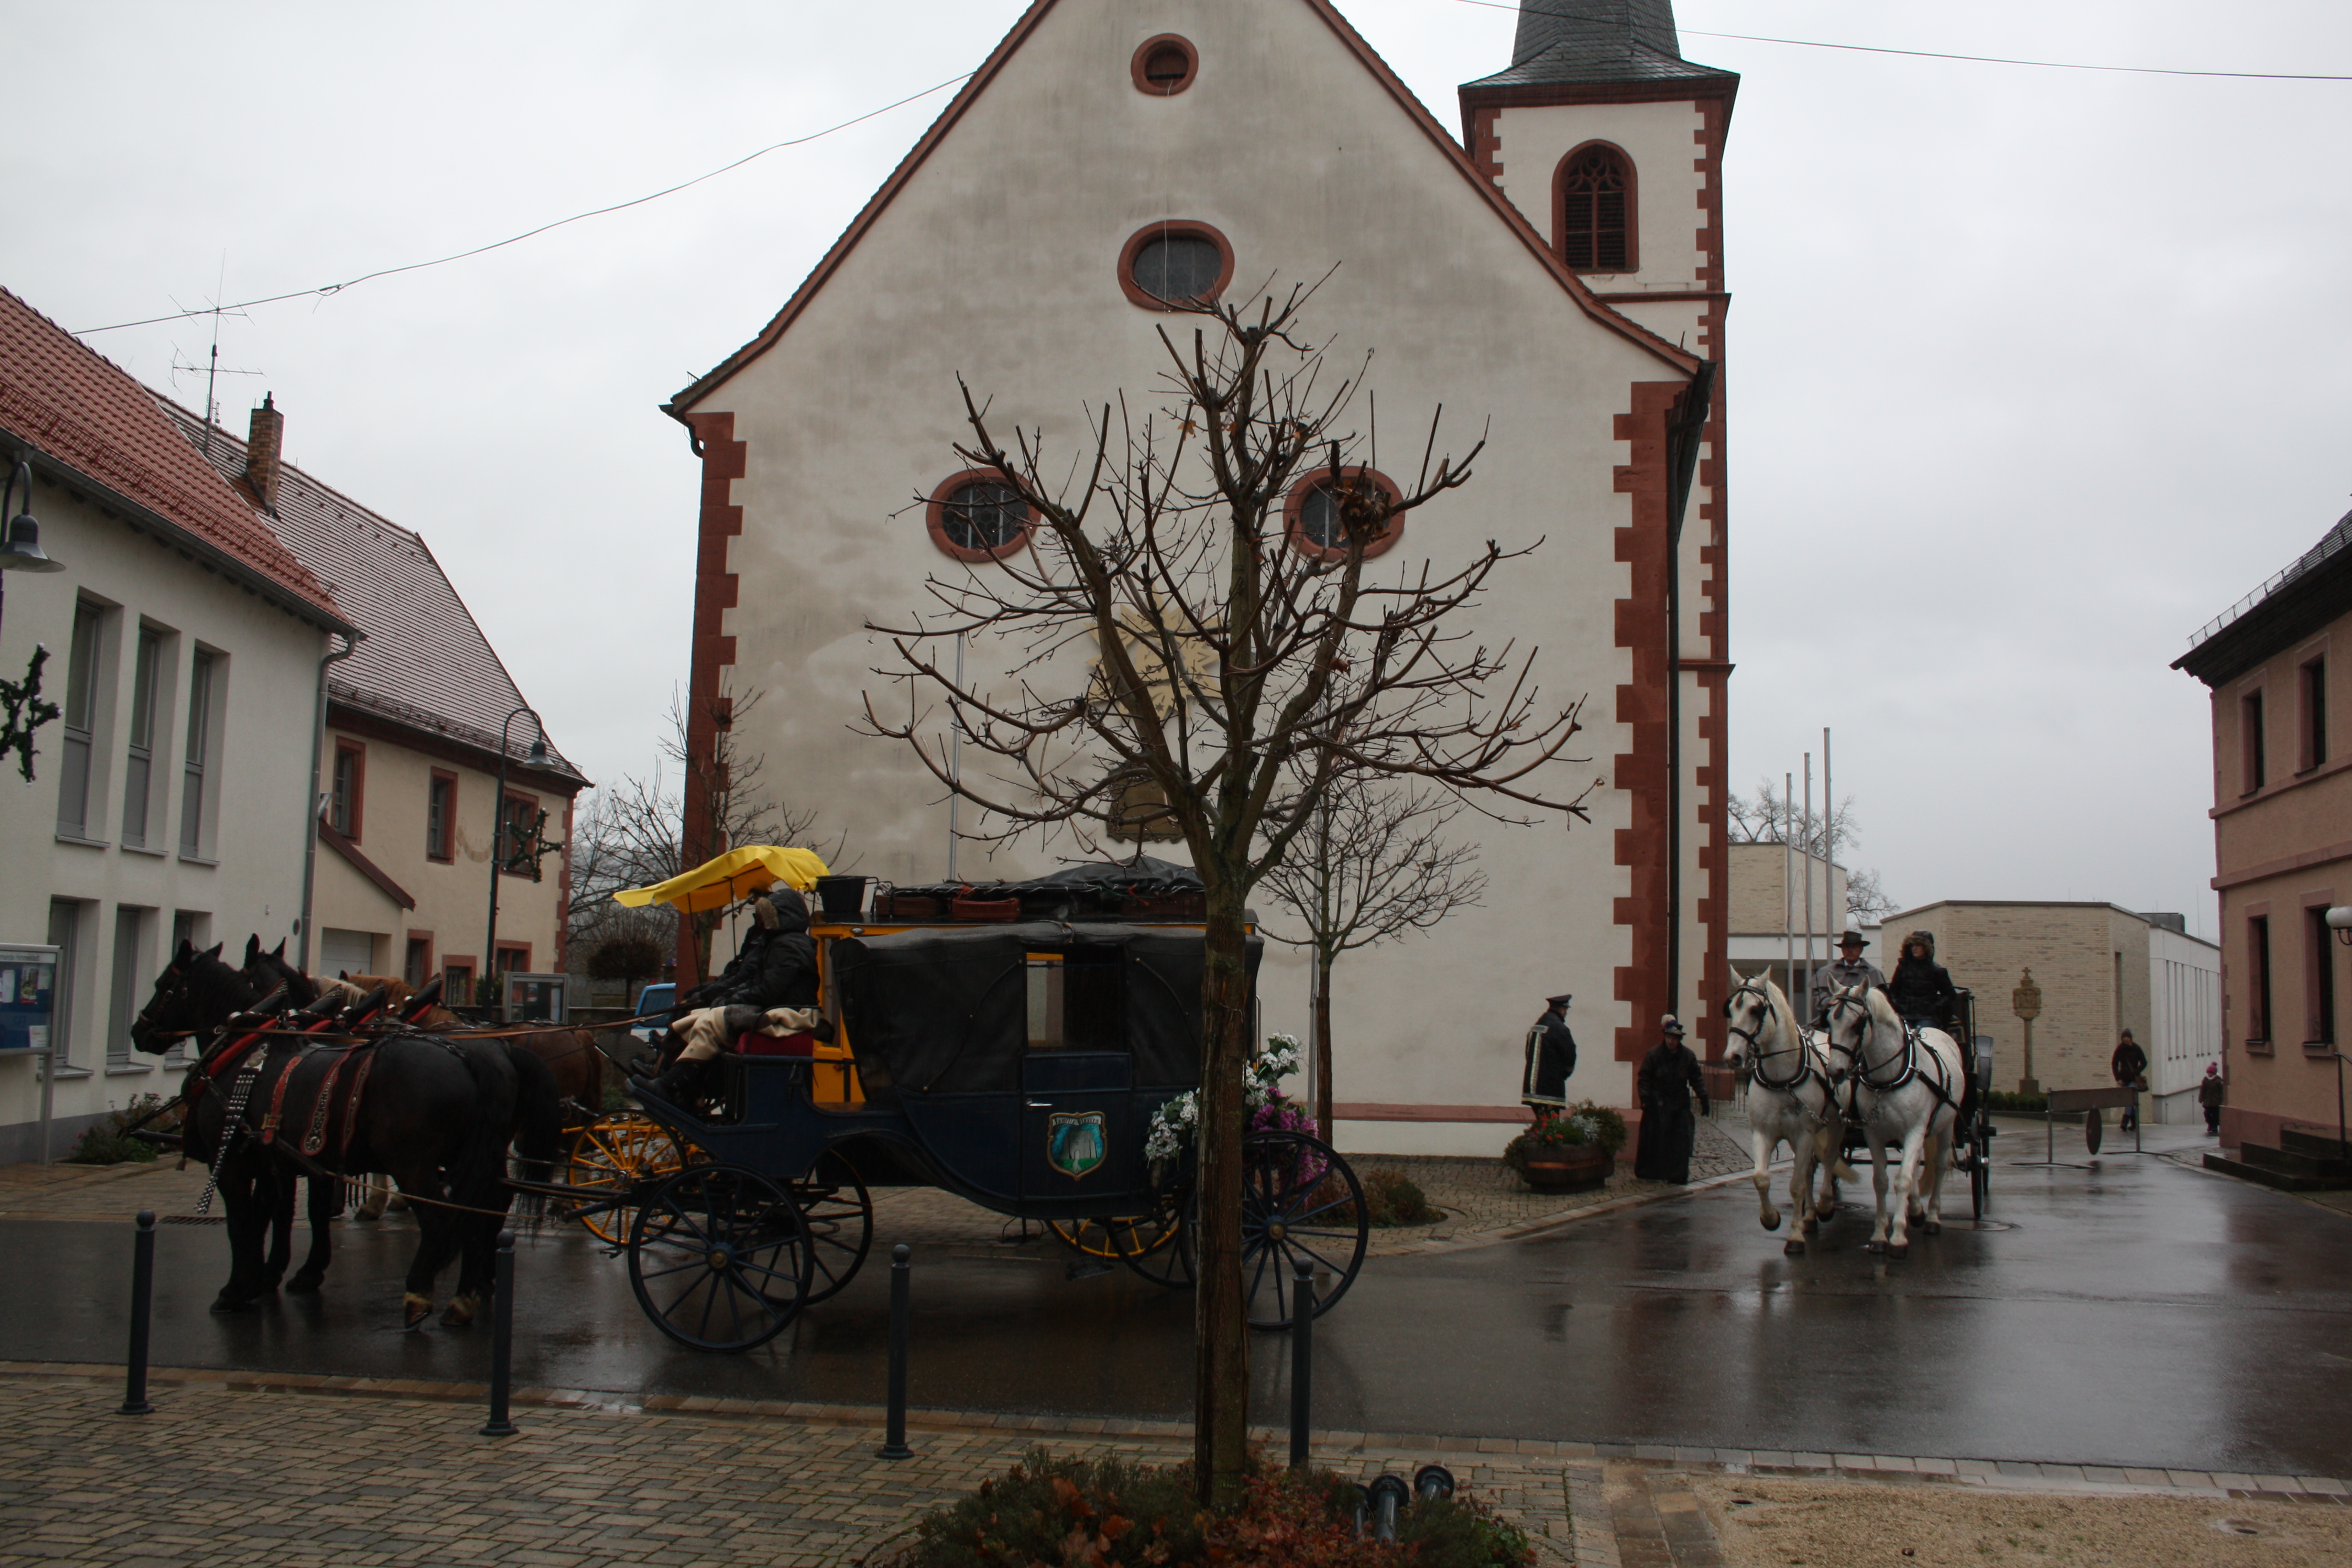 Weihnachtsmarkt Himmelstadt: Die Kutschen fahren vor zum Weihnachtspostamt, vorbei an der Kirche.